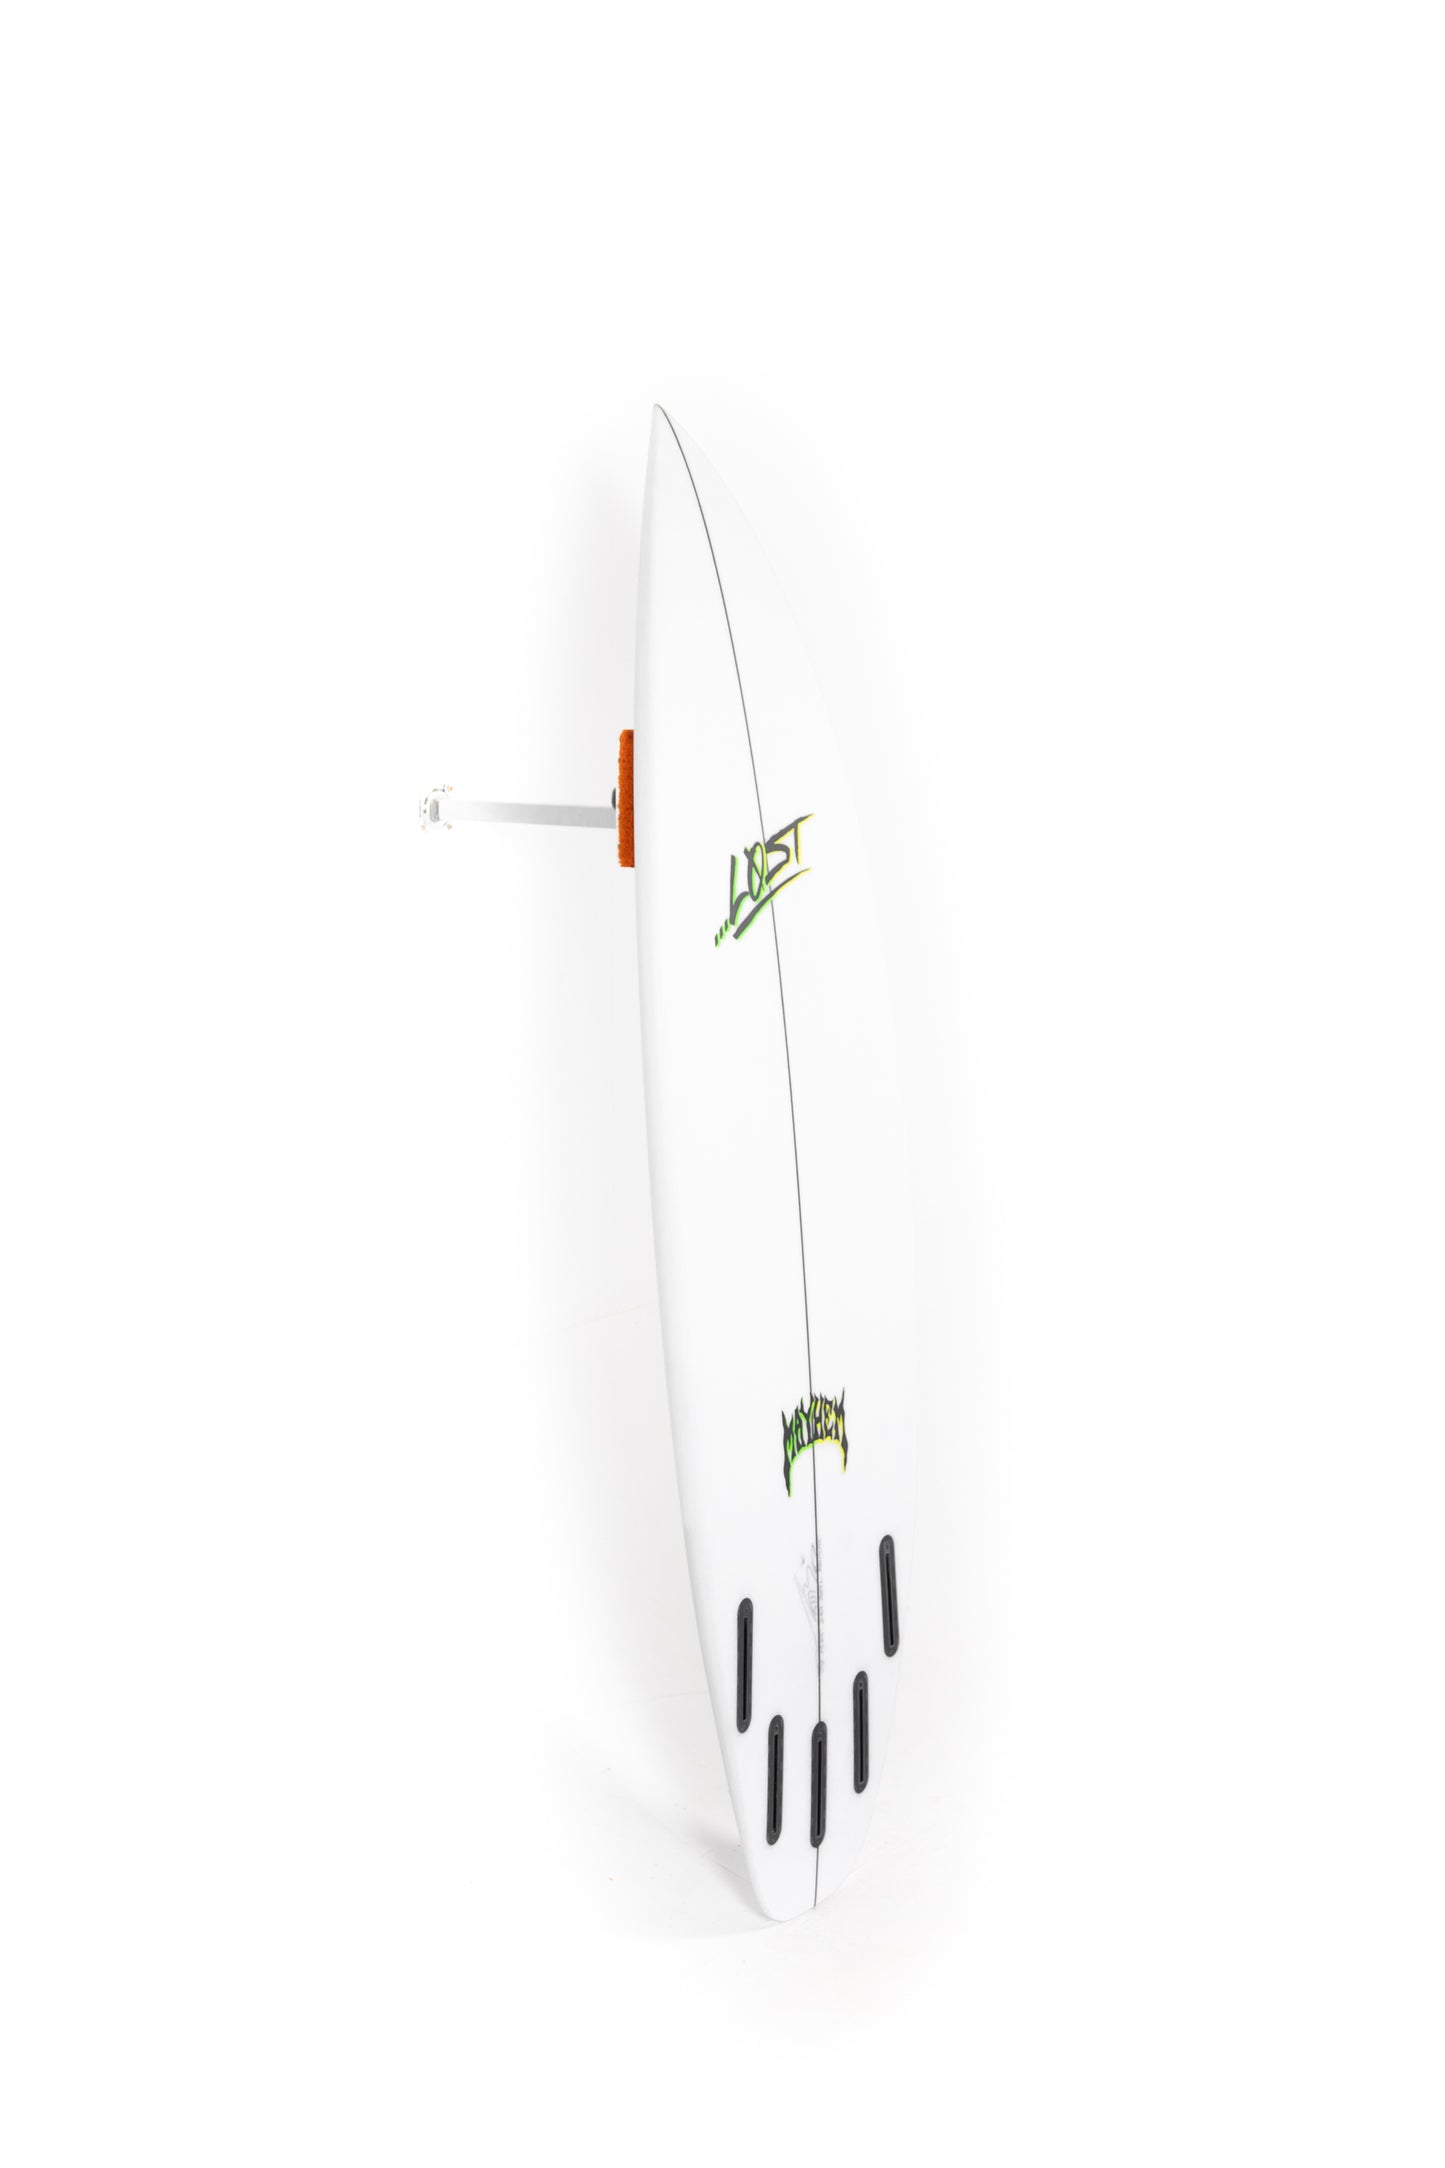 
                  
                    Pukas Surf Shop - Lost Surfboard - THE RIPPER by Matt Biolos - 5'8"x 19.25" x 2.37 - 28.50L - MH19095
                  
                